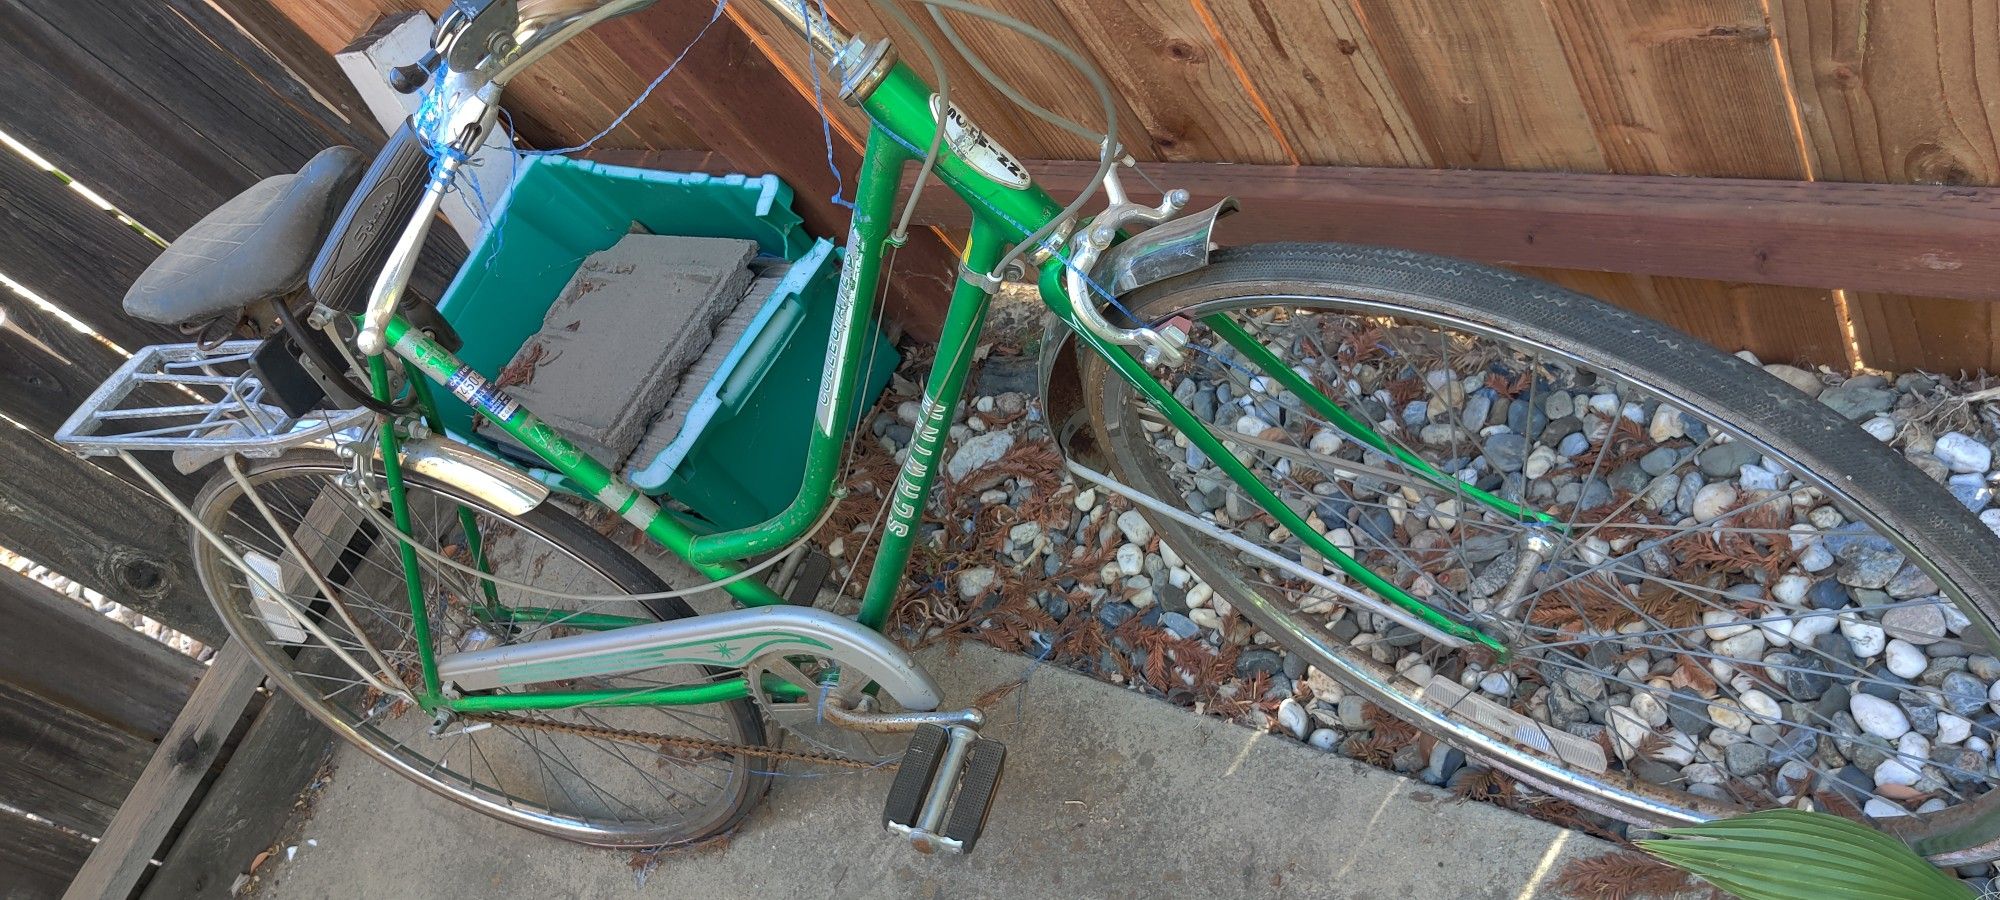 Schwinn Antique Bike Used MUST GO ASAP